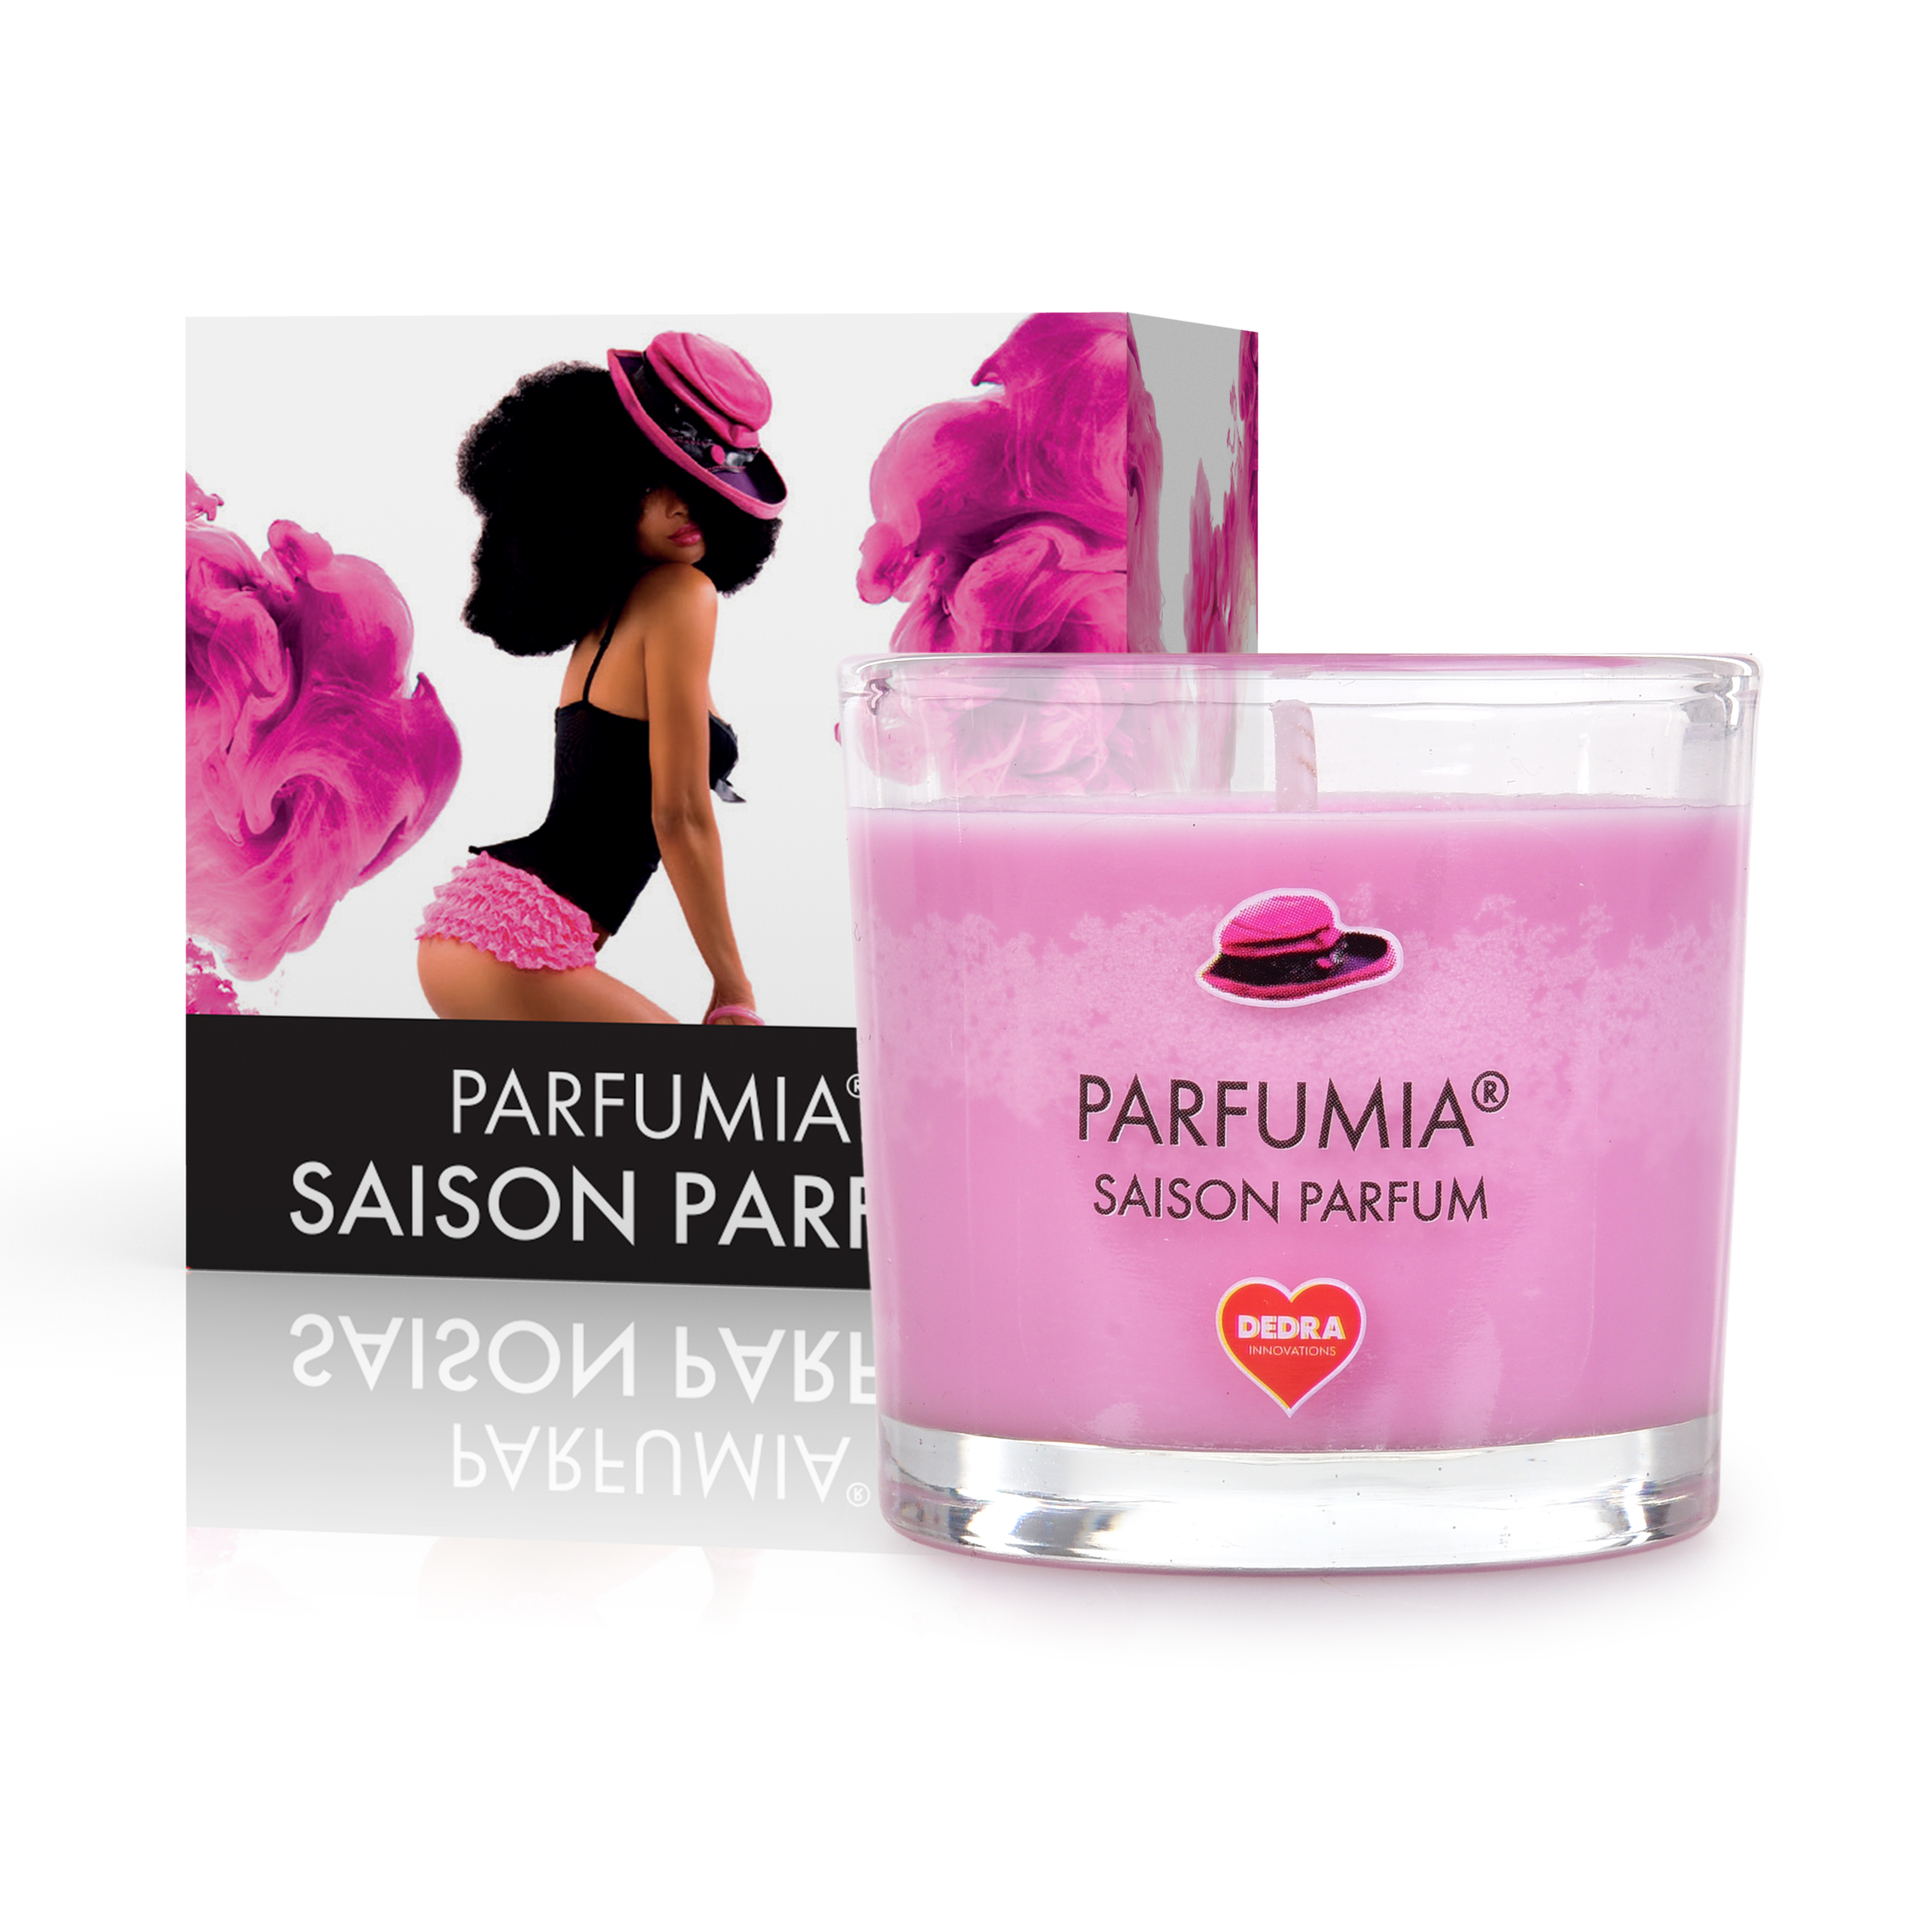 55 ml votivní sójová eko-svíce, SAISON PARFUM, PARFUMIA®